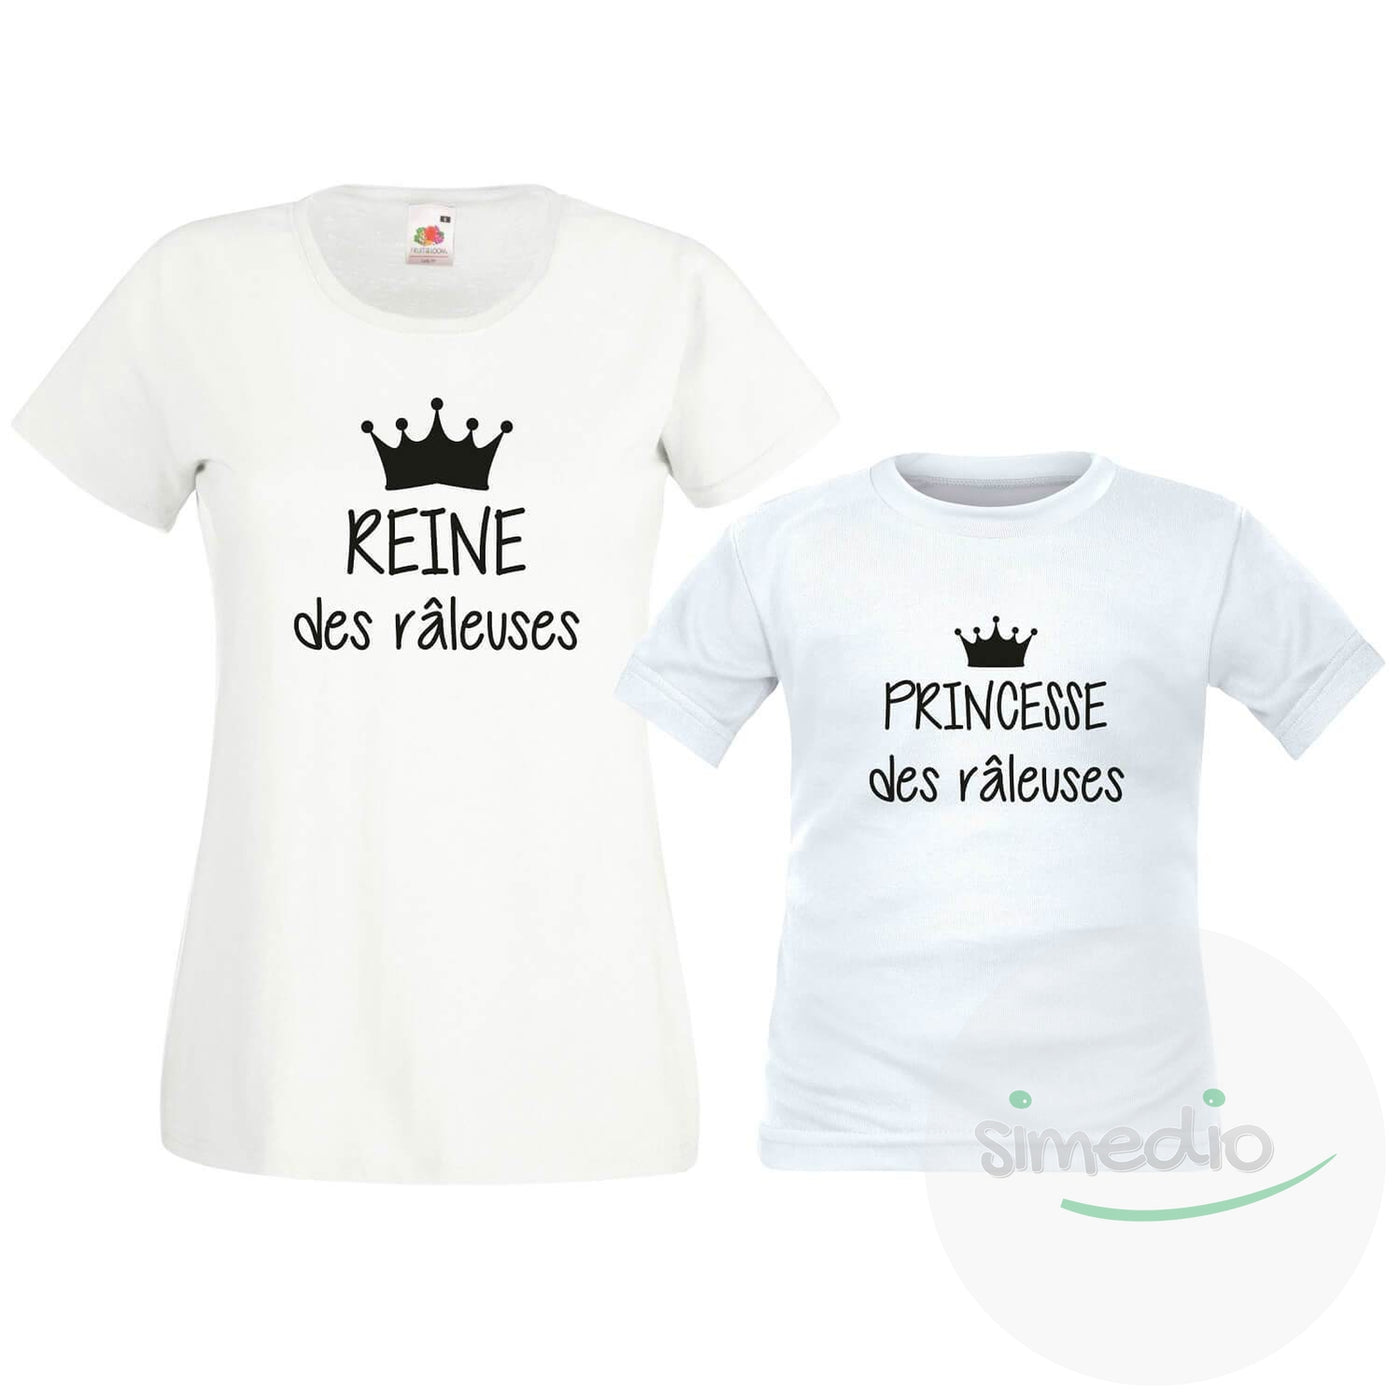 Ensemble famille des tee shirts : REINE / PRINCESSE des râleuses, ROI / PRINCE des râleurs, , , - SiMEDIO